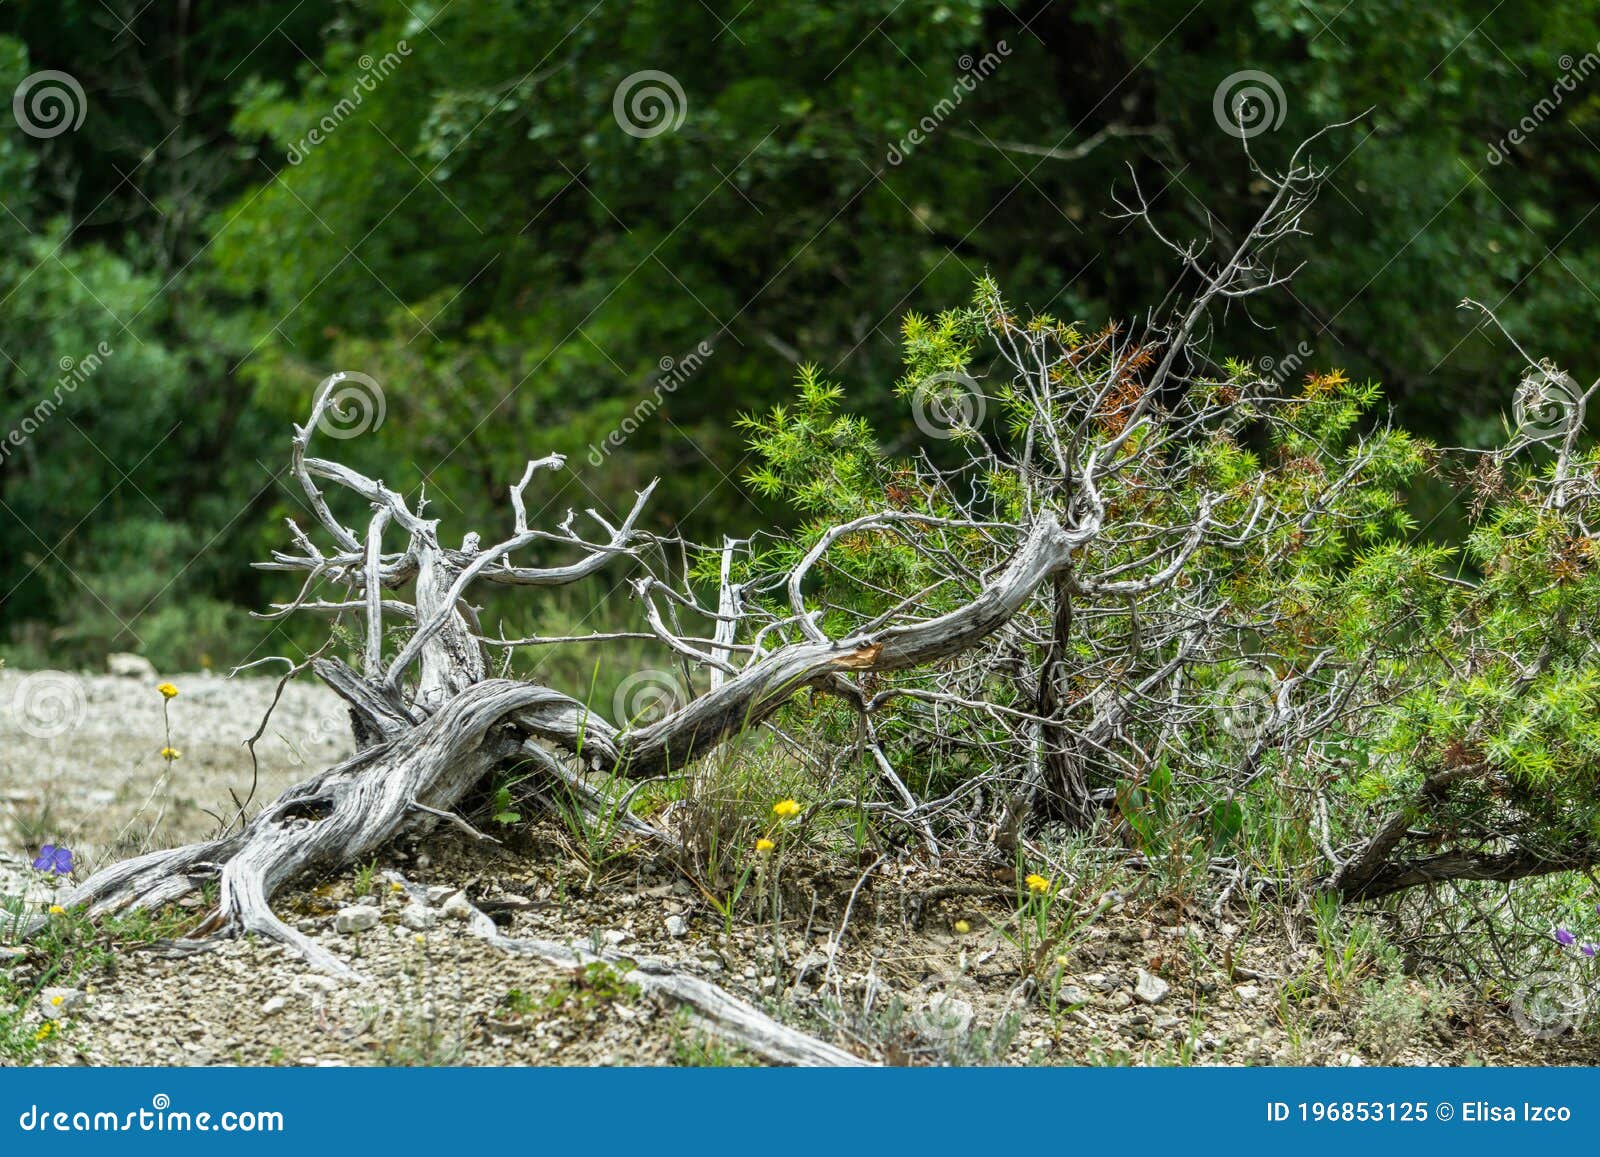 rama seca con curiosas formas en el suelo de un claro de un frondoso bosque